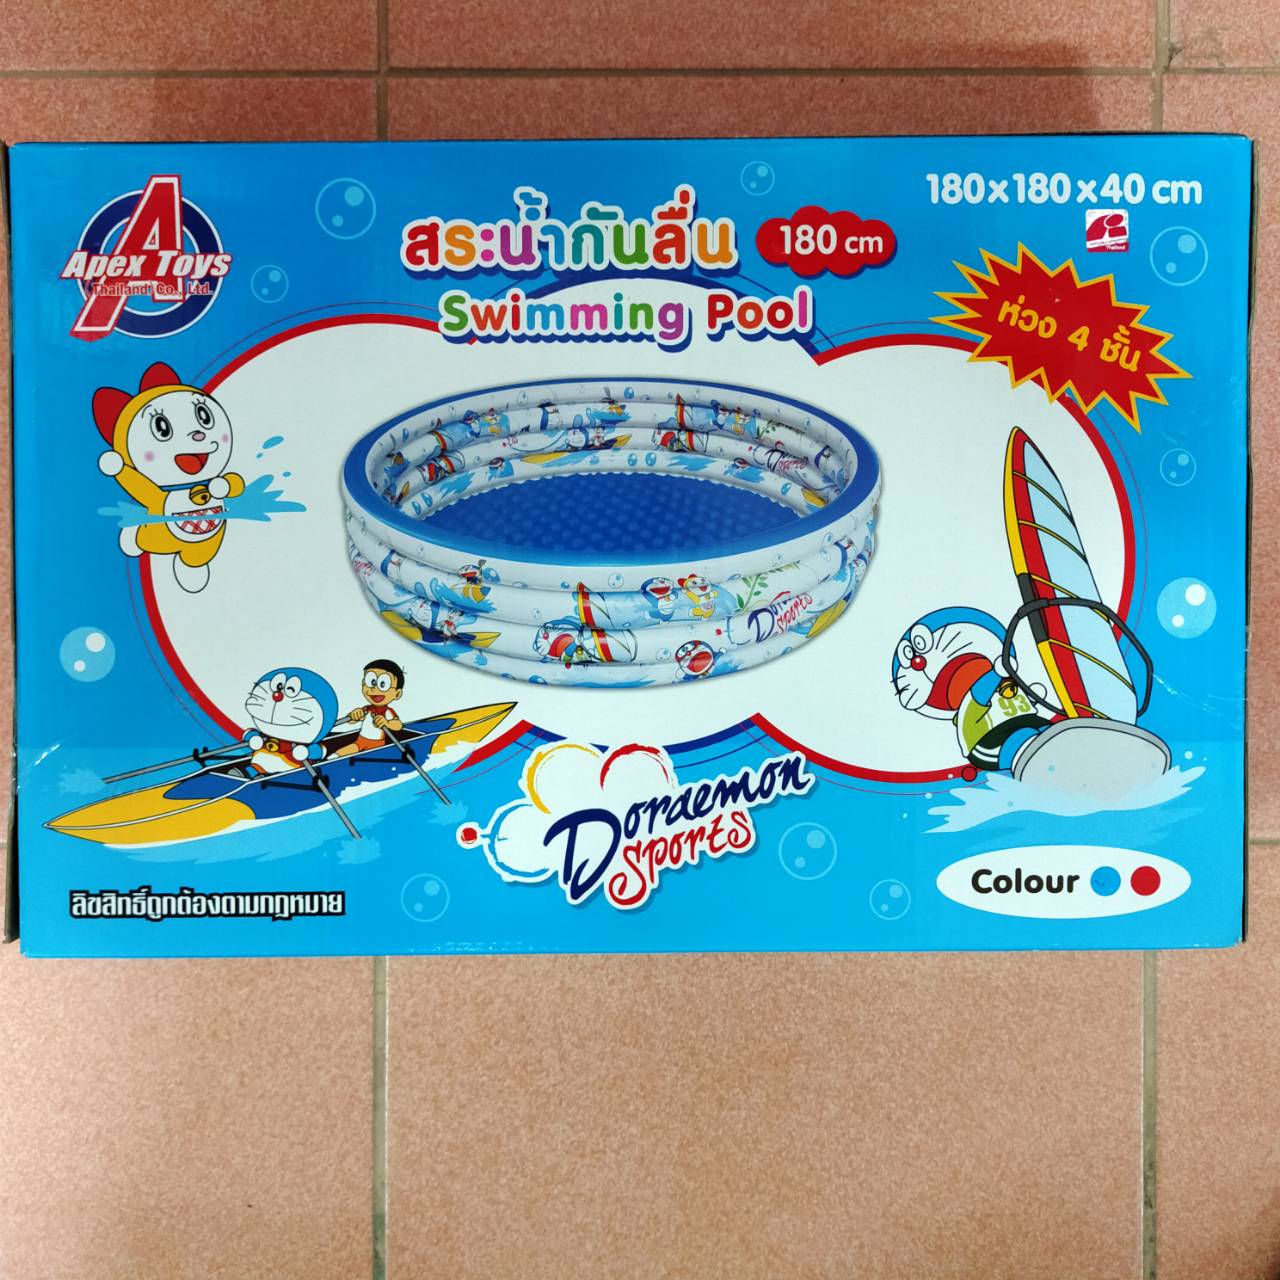 Doraemon Swimming Pool สระน้ำเป่าลมพื้นเป็นลอนกันลื่น ลายลิขสิทธ์โดเรม่อน  ขนาด 1.8 x 1.8 x 0.4 เมตร ห่วง 4 ชั้น สระน้ำทรงกลม ลายโดเรม่อน สระน้ำเป่าลม สระเป่าลม สระน้ําเป่าลมราคาถูก สระว่ายน้ําเป่าลม บ้านลม บ้านเป่าลม ปราสาทลม สระน้ำ